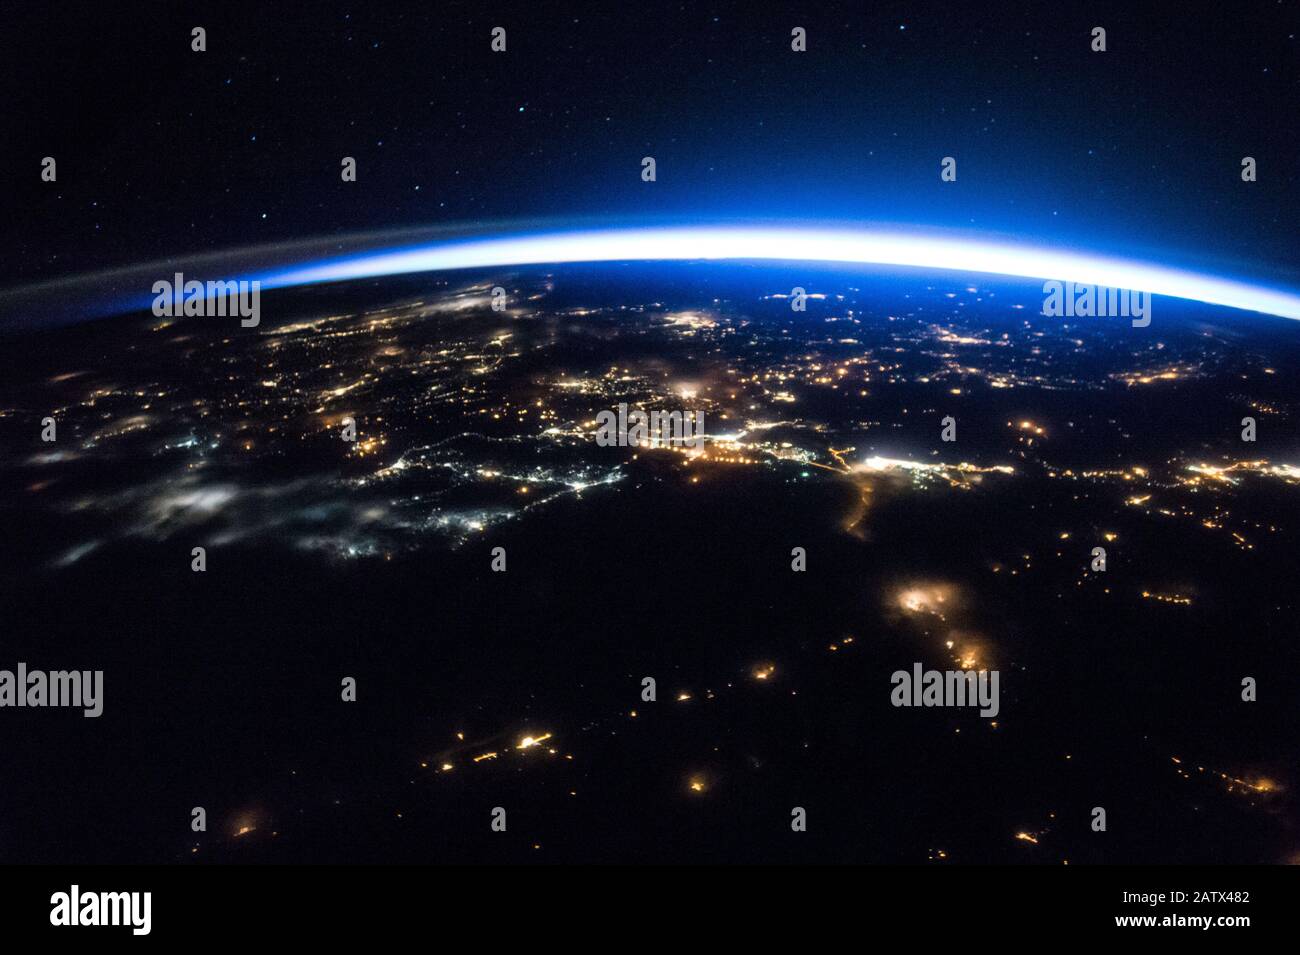 ISS - 28 Mar 2017 - la Stazione spaziale Internazionale continua la sua orbita intorno alla Terra mentre gli astronauti della spedizione 50 hanno catturato questa immagine notturna della scintilla Foto Stock